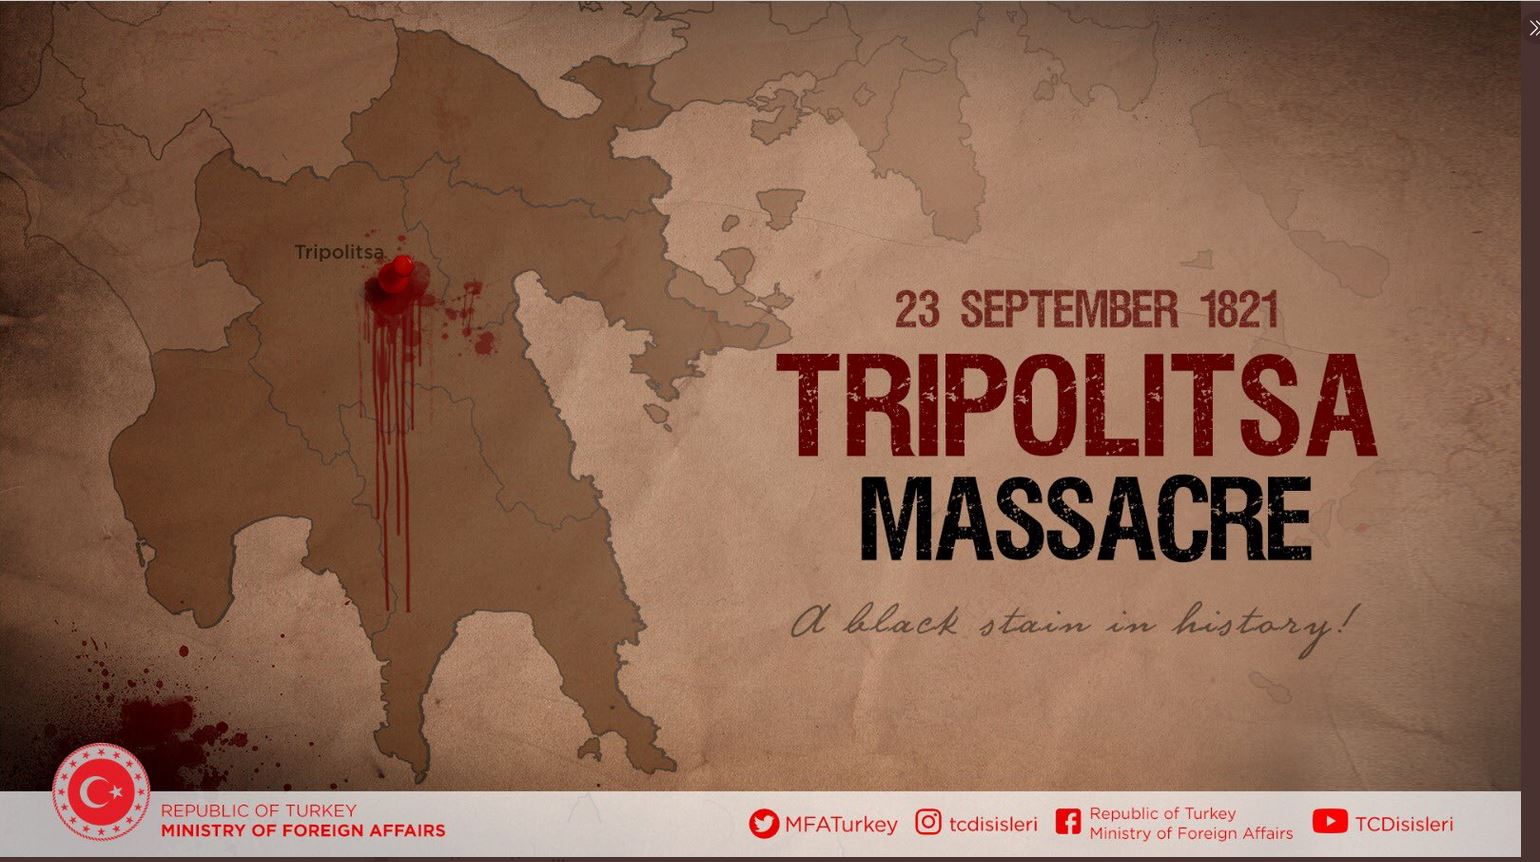 Τουρκικό ΥΠΕΞ - Χαρακτηρίζει «σφαγή των Τούρκων» την Απελευθέρωση της Τριπολιτσάς το 1821 - Δημοσίευσε «ματωμένο» χάρτη